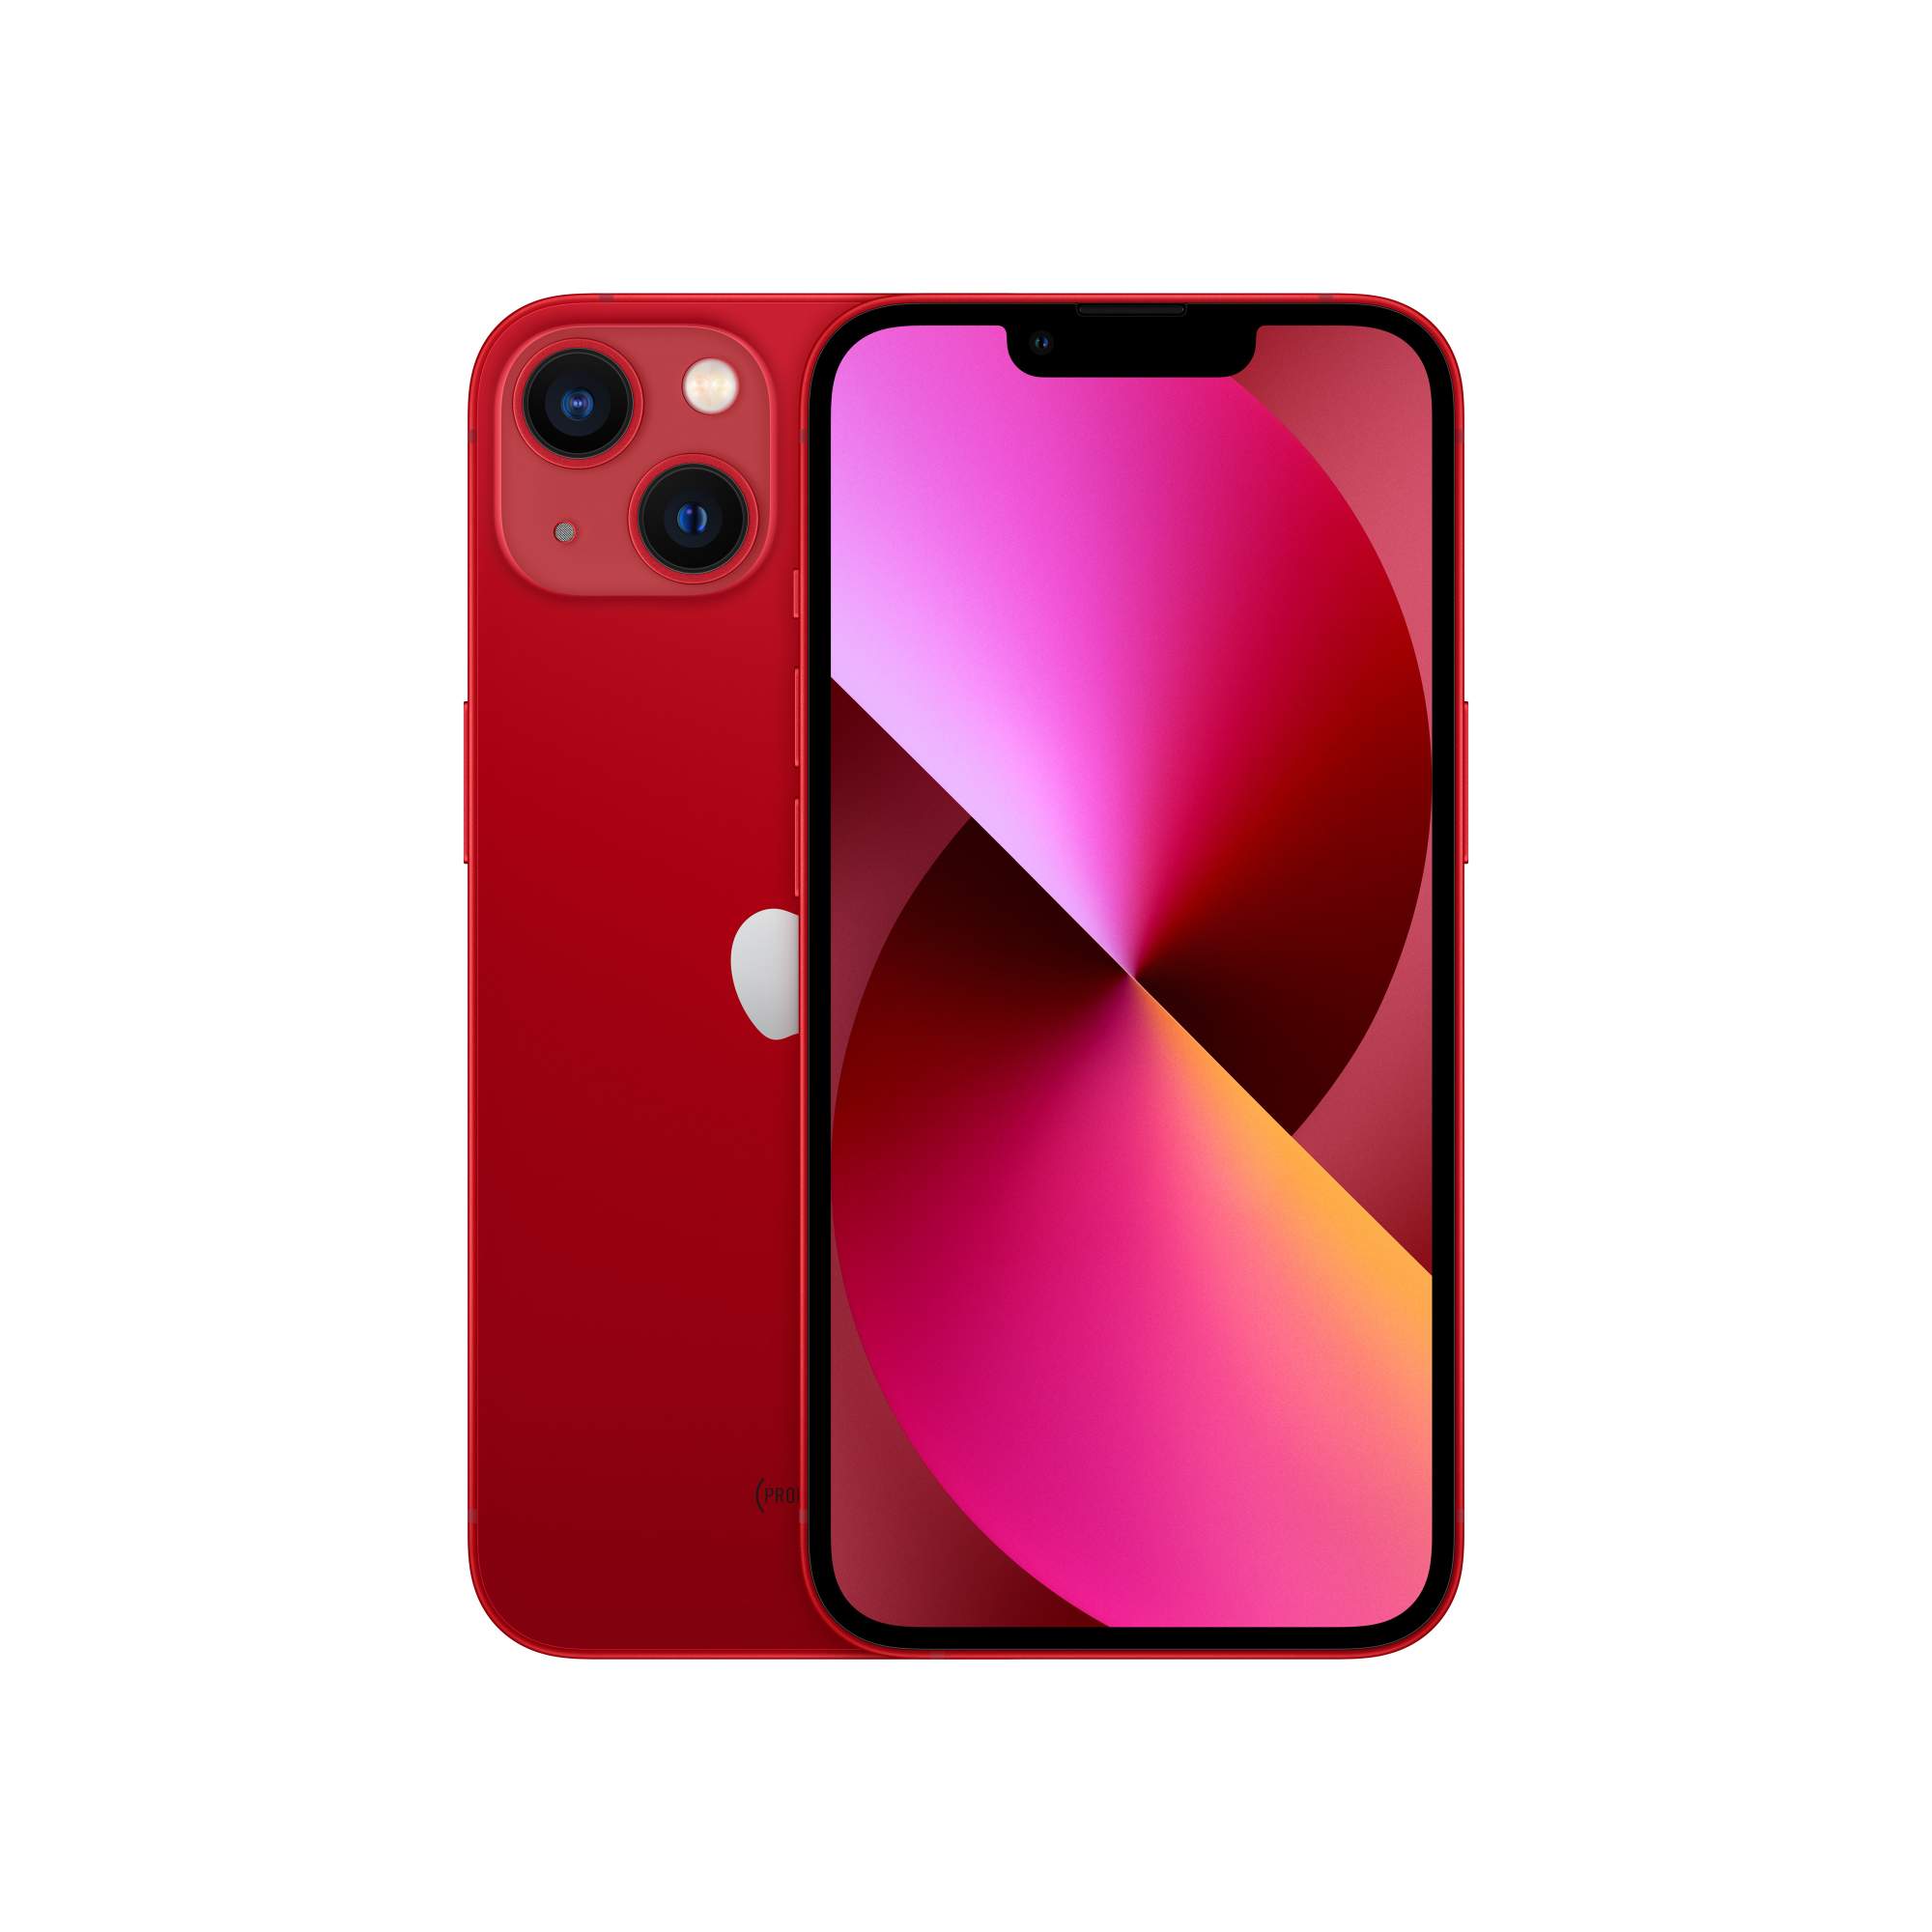 Смартфон Apple iPhone 13 mini 256GB (PRODUCT) RED, купить в Москве, цены в интернет-магазинах на Мегамаркет